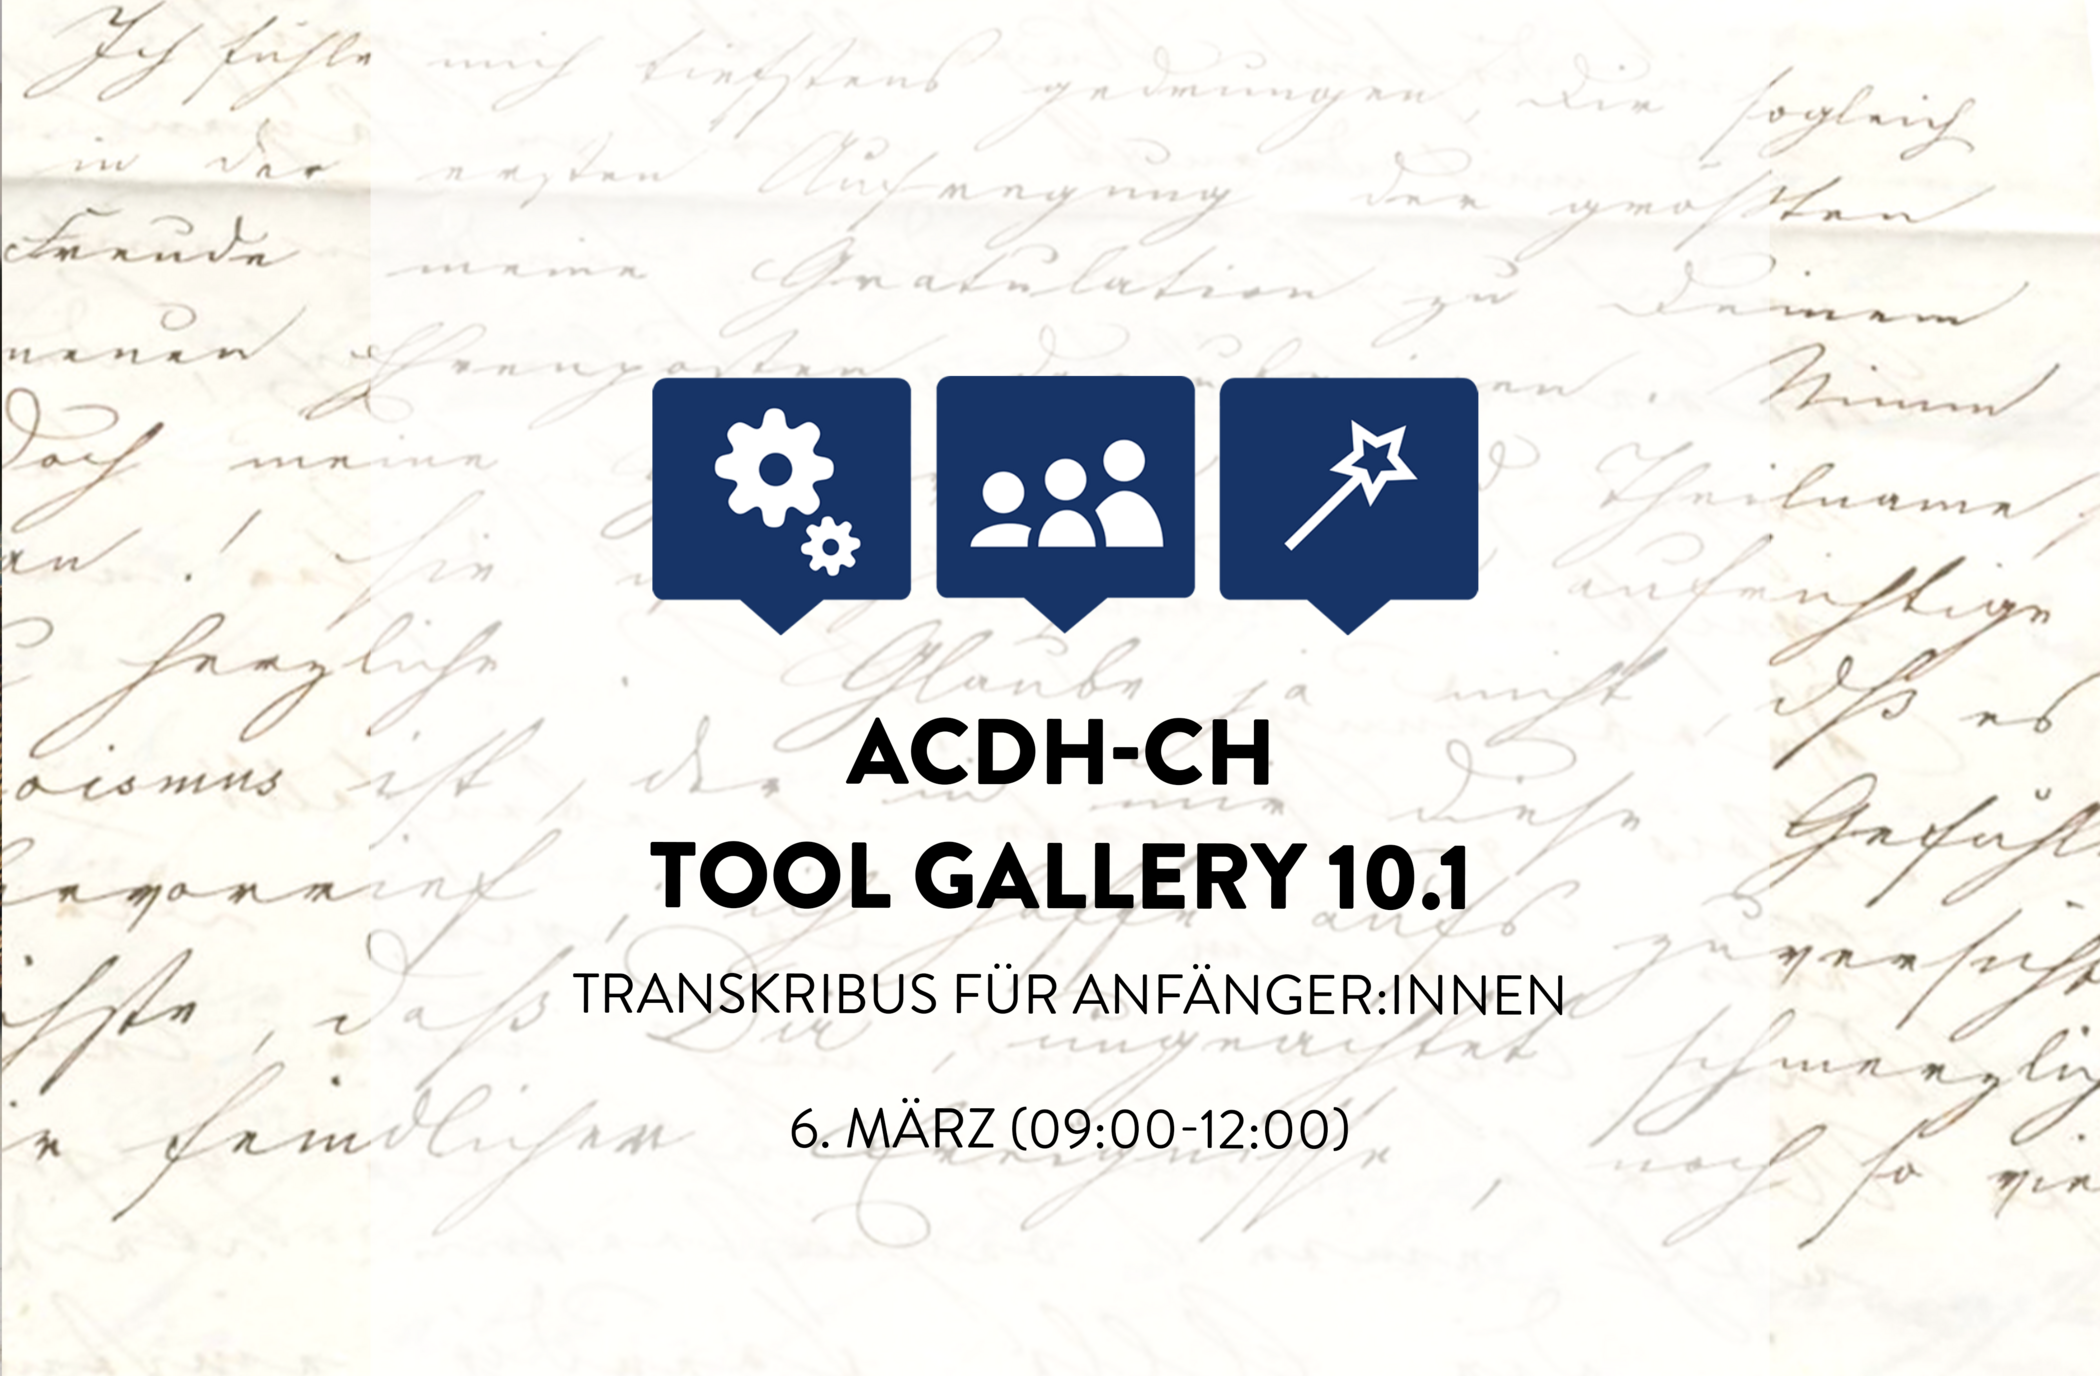 ACDH-CH Tool Gallery 10.1: Transkribus für Anfänger:innen